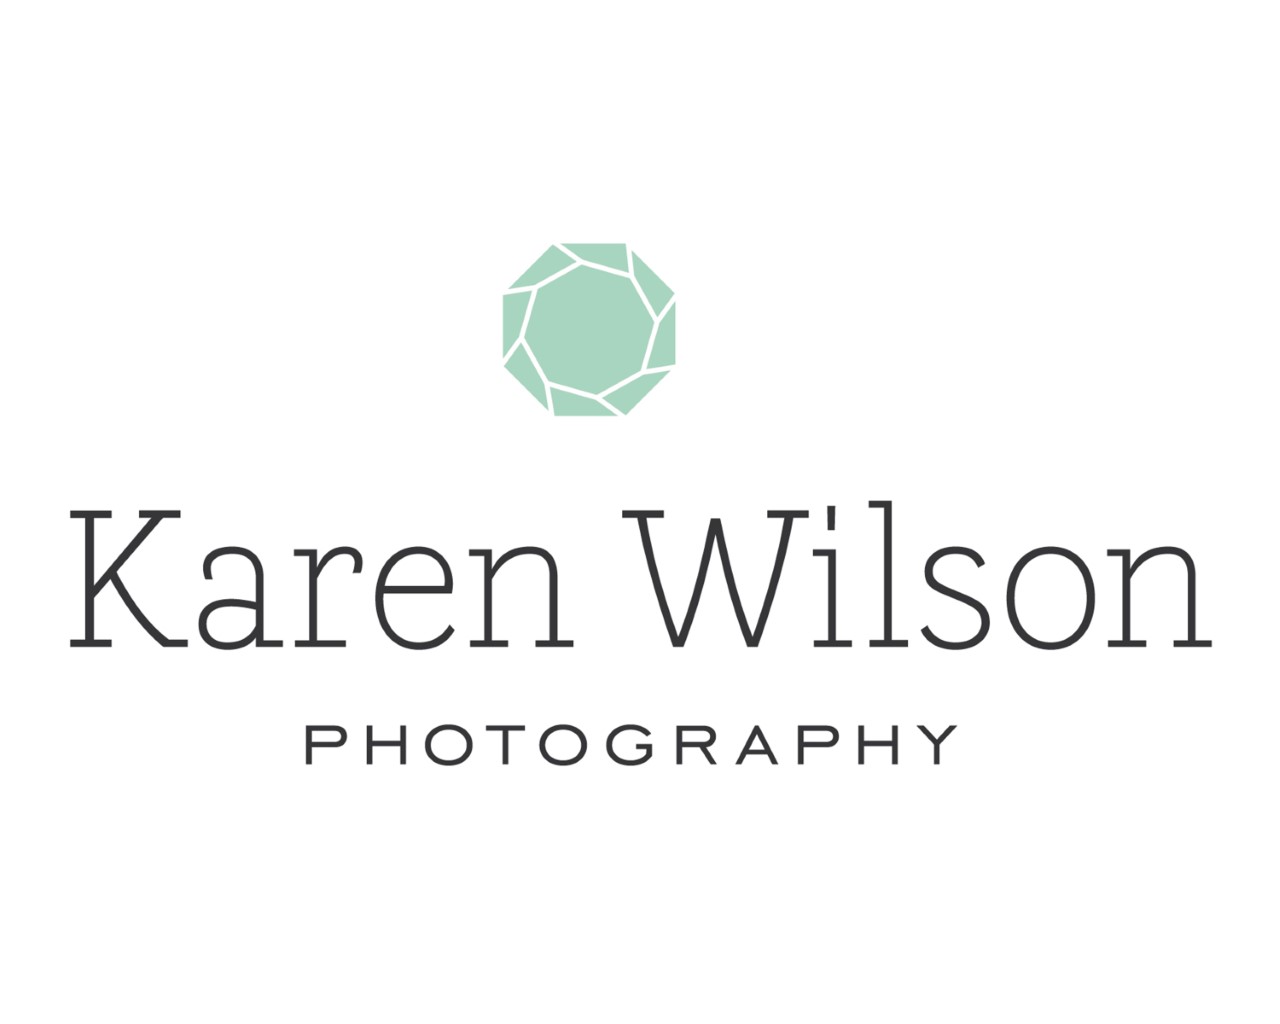 Karen Wilson Photography